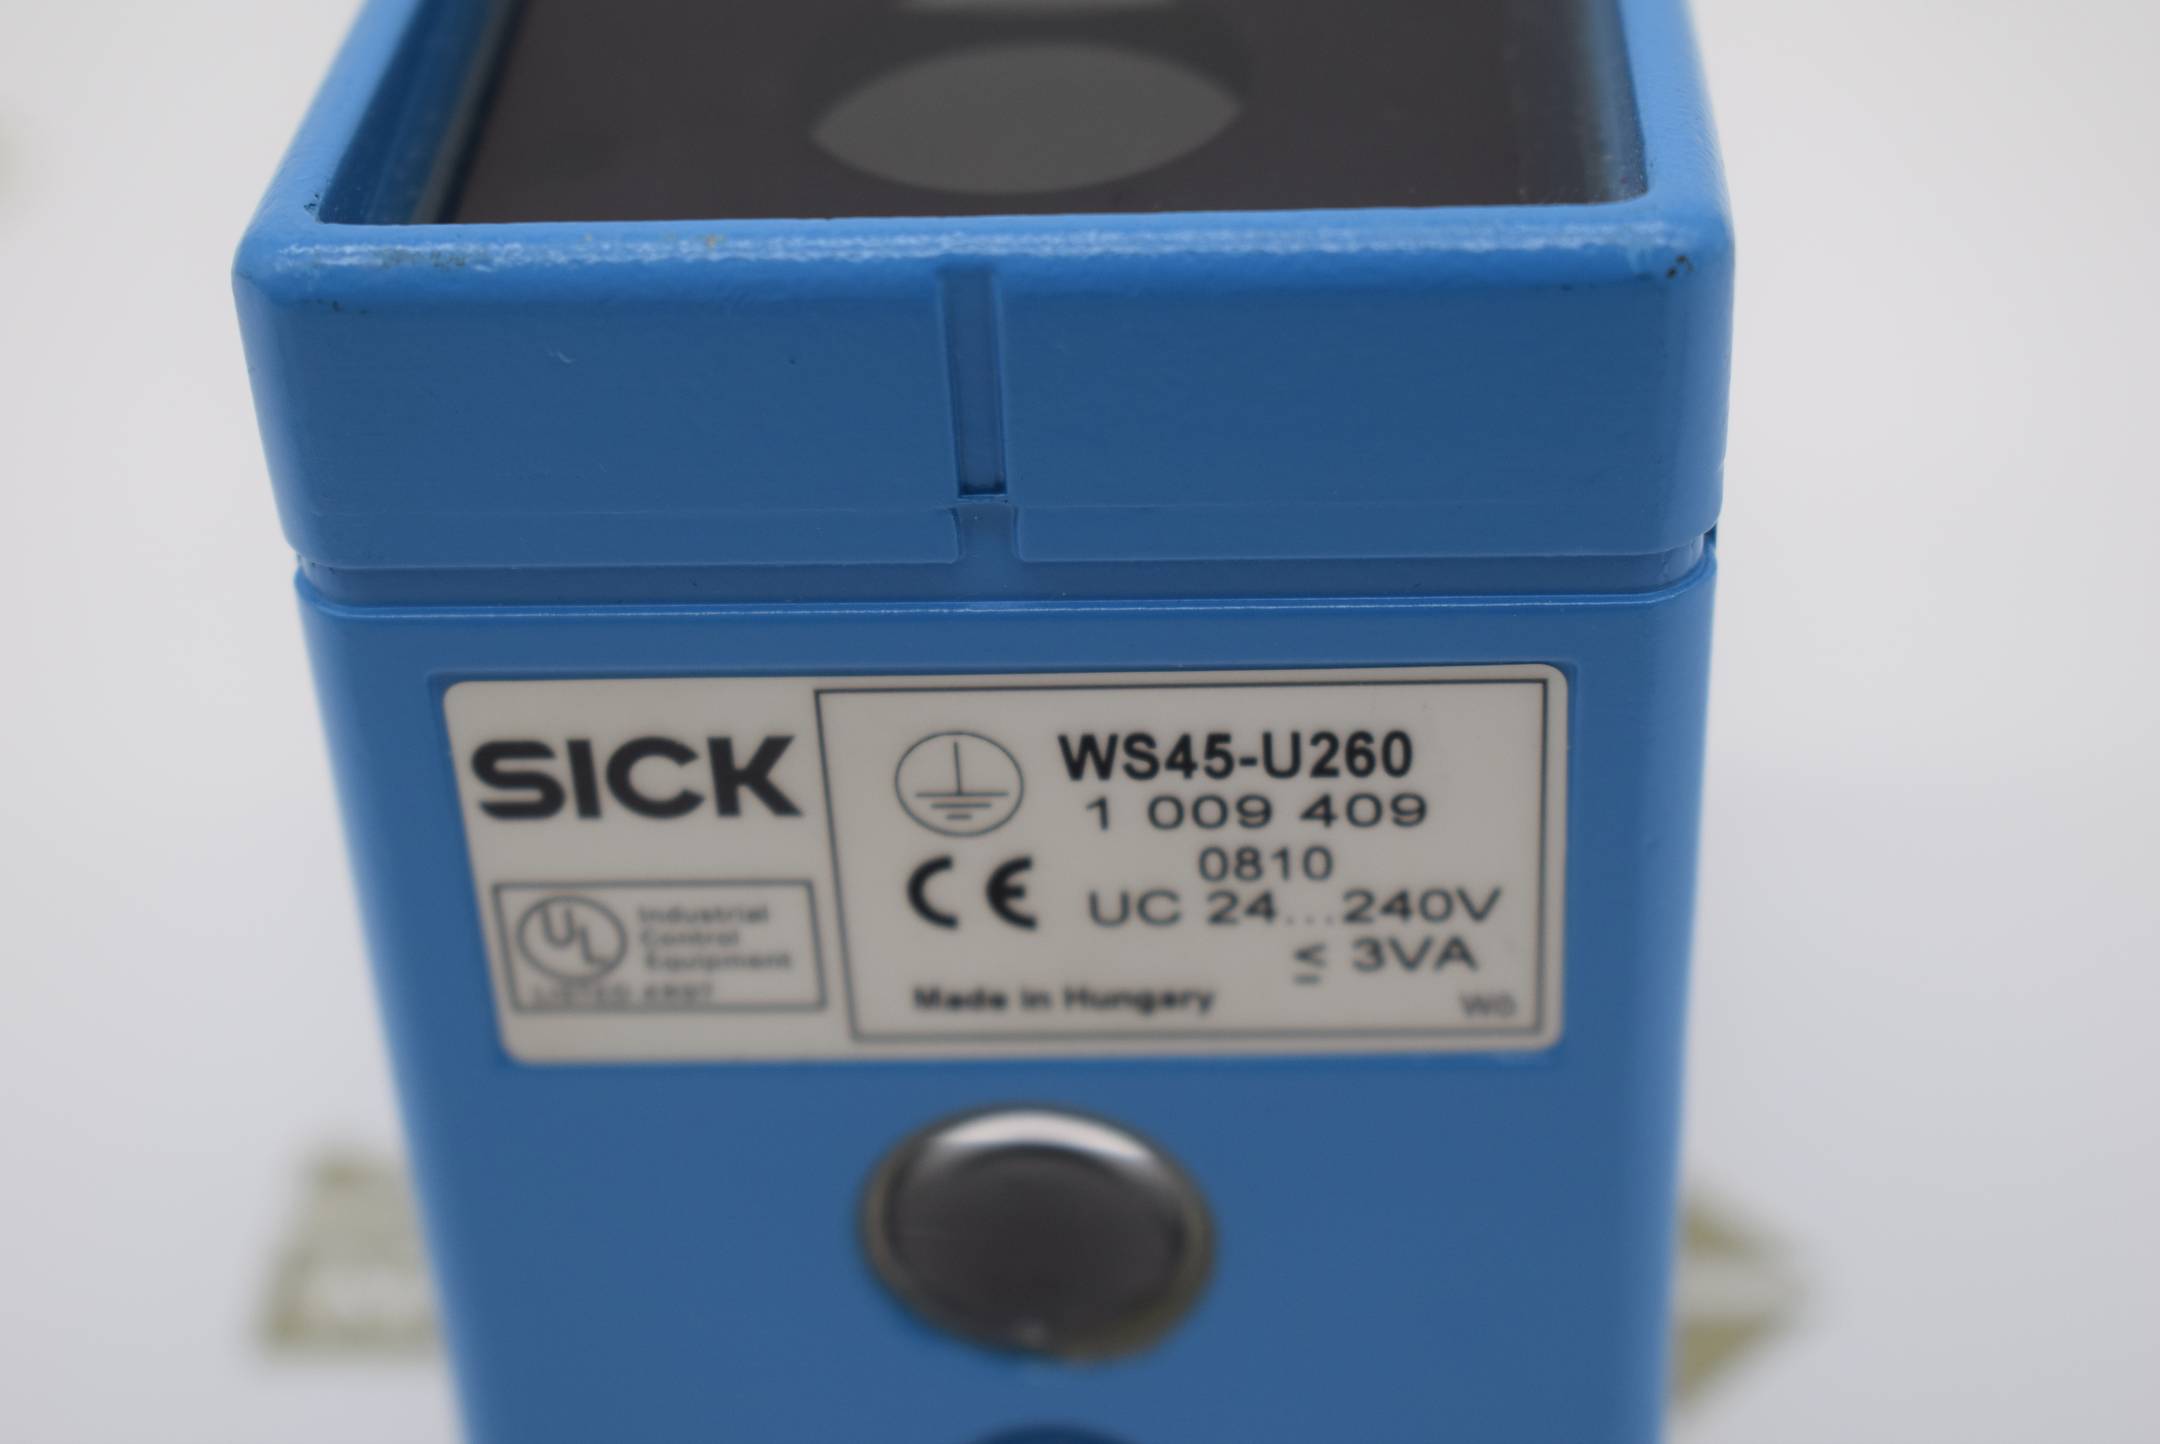 Sick WS45-U260 1 009 409 